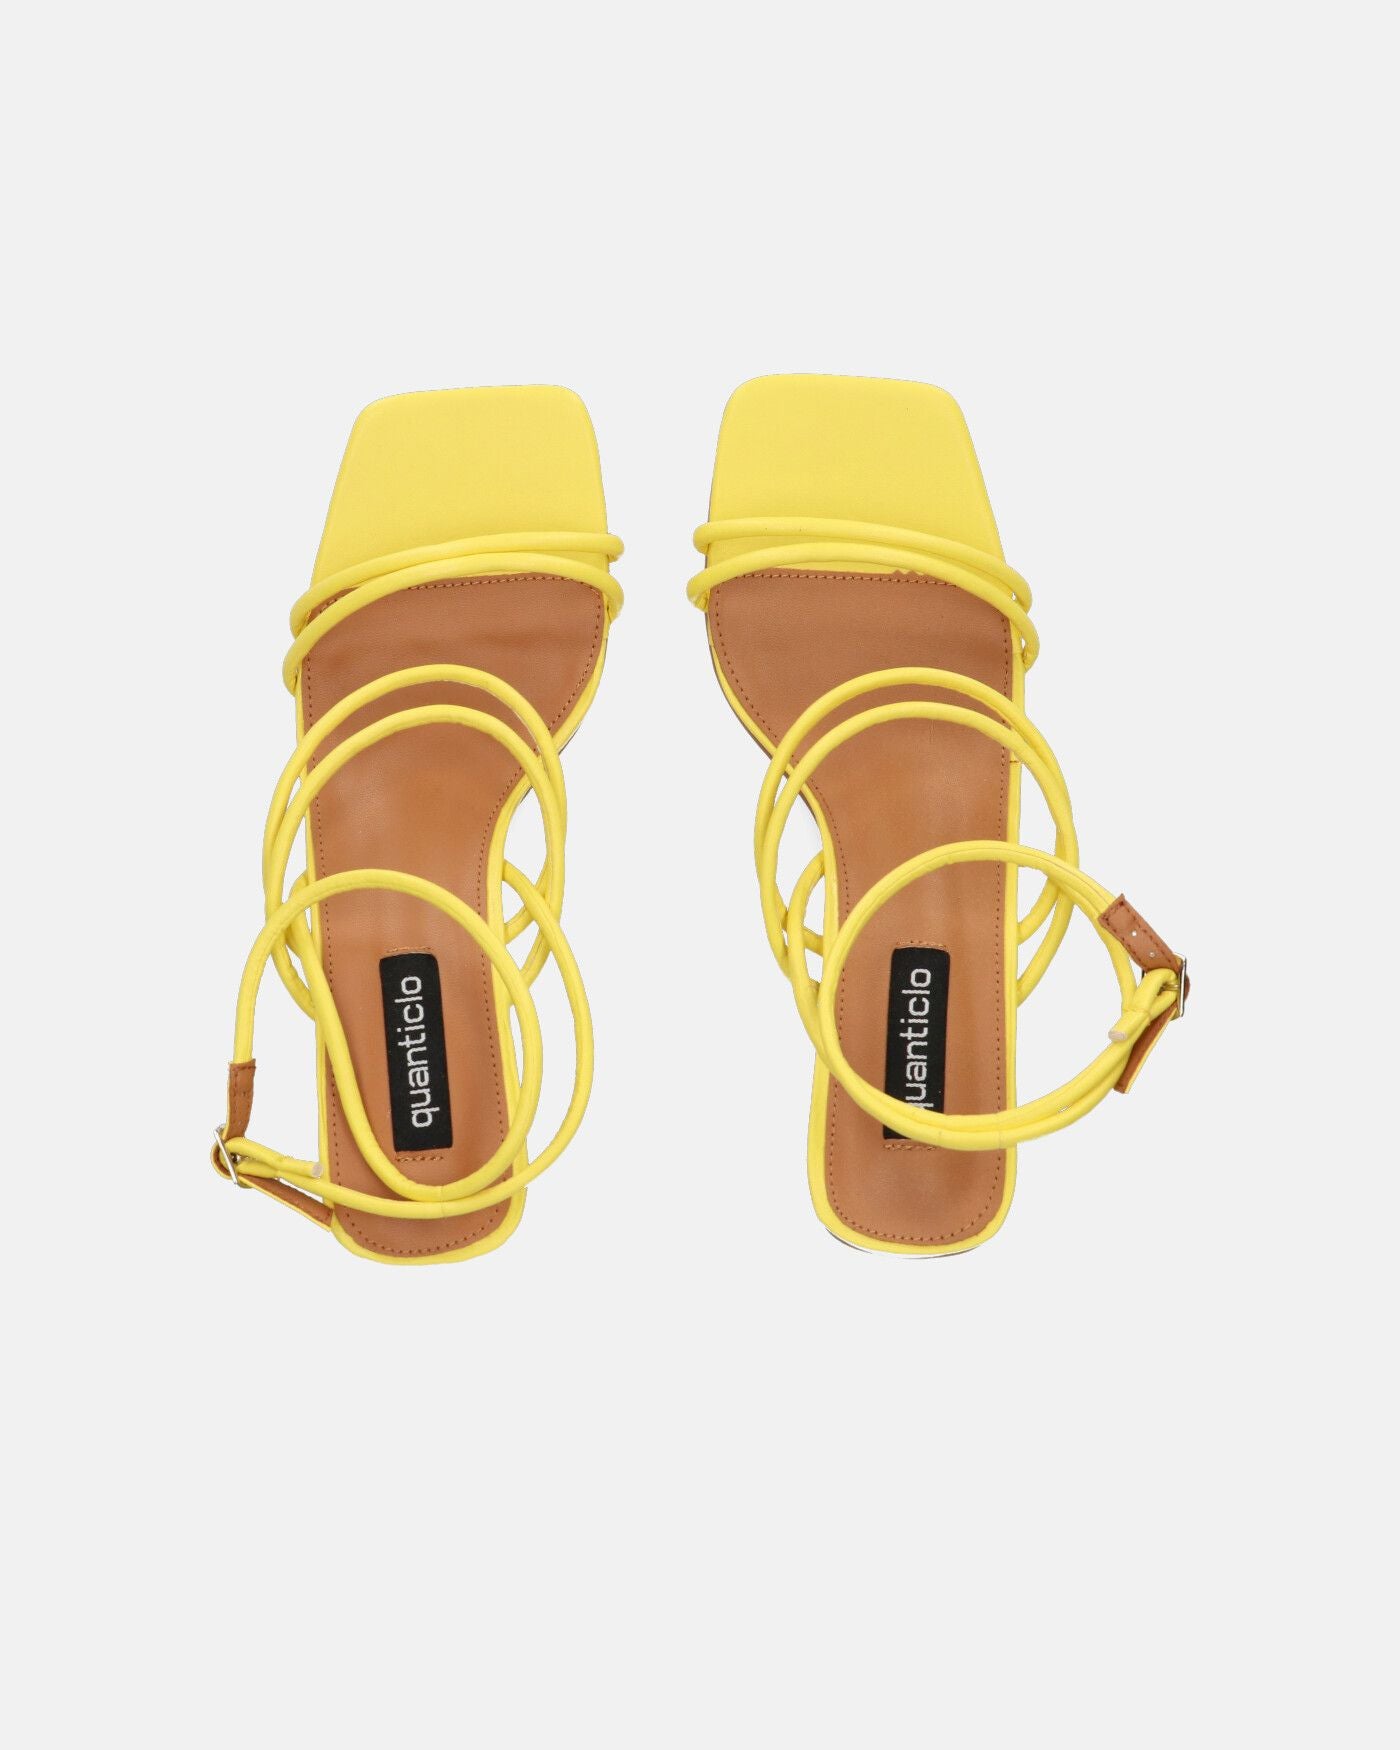 TIARA - sandali in ecopelle gialla con lacci